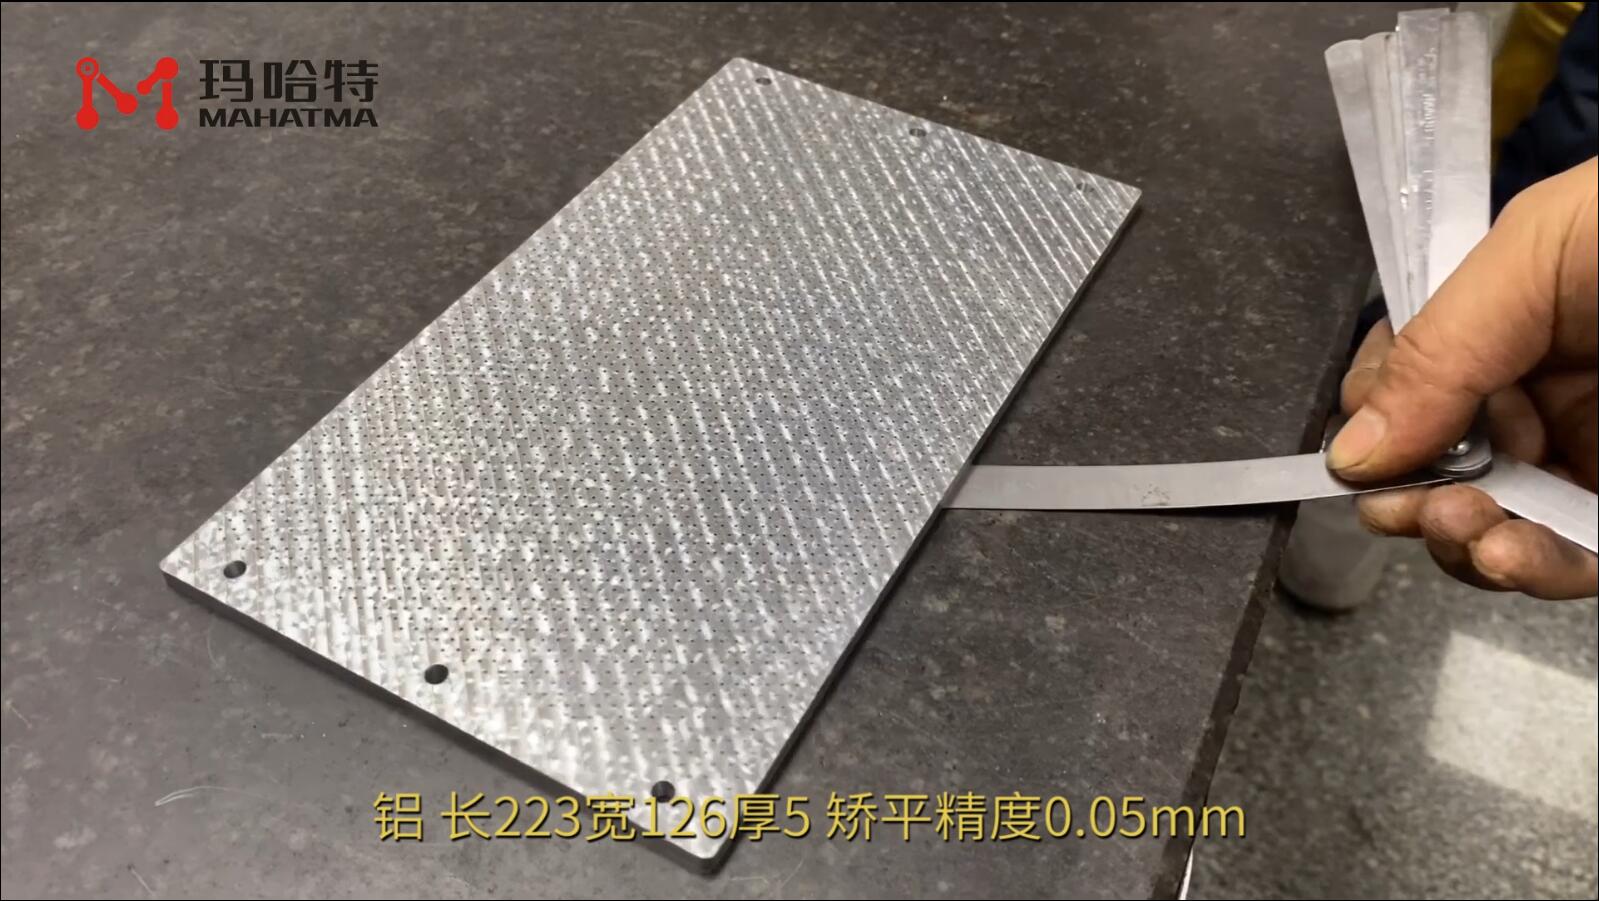 铝 MHT60-600 长方形 长223宽126厚5mm